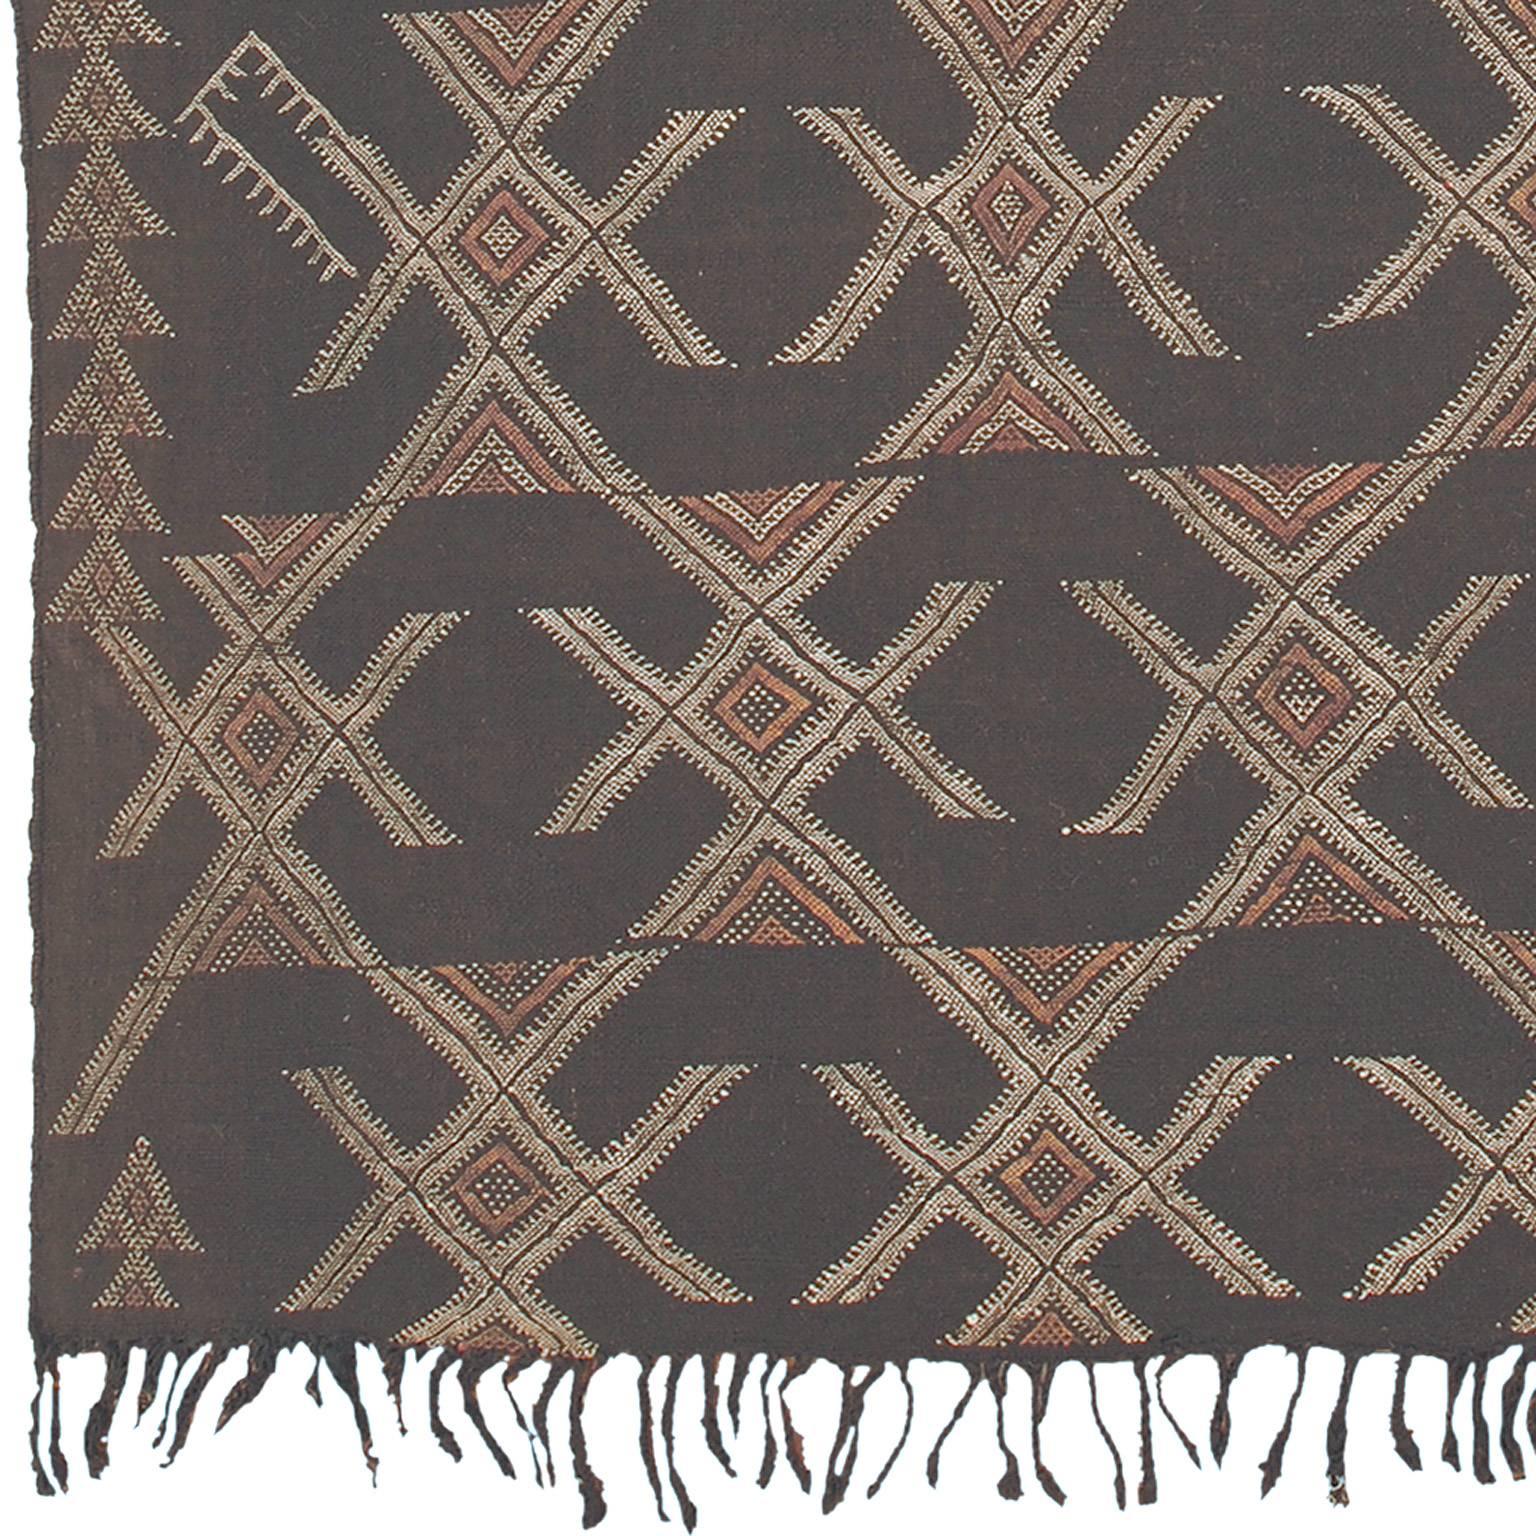 Mid-20th century Moroccan 'Zaiane' carpet.